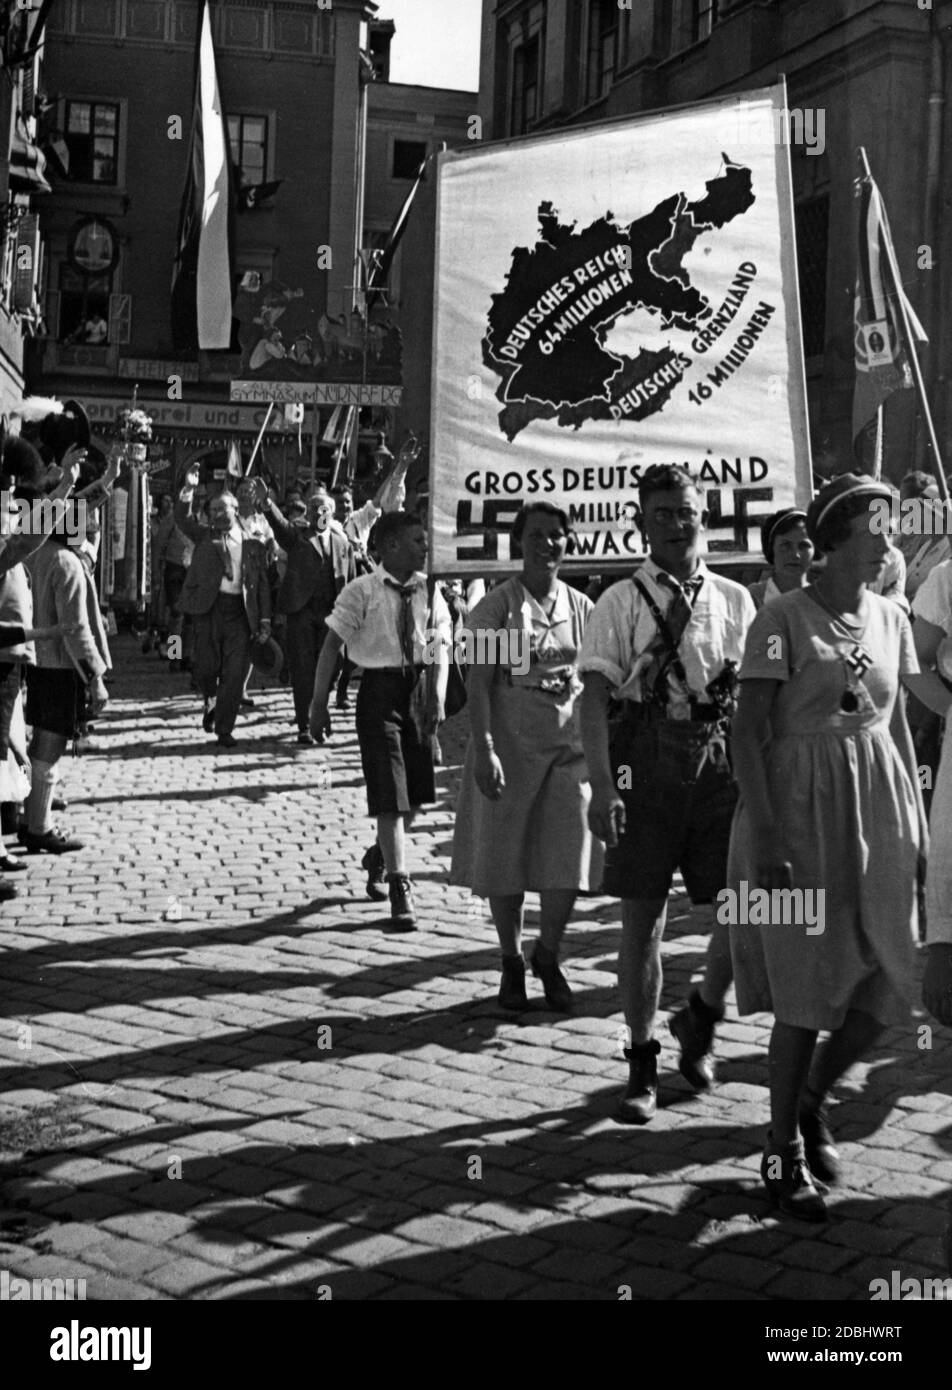 Bei einem marsch in Passau halten Demonstranten ein Transparent hoch, das ein Großdeutschland fordert. Die Karte zeigt die Gebiete Elsass-Lothringen, Teile der Schweiz und Österreich, das Sudetenland, Oberschlesien, Westpreußen und Posen für ein Großdeutschland. Stockfoto